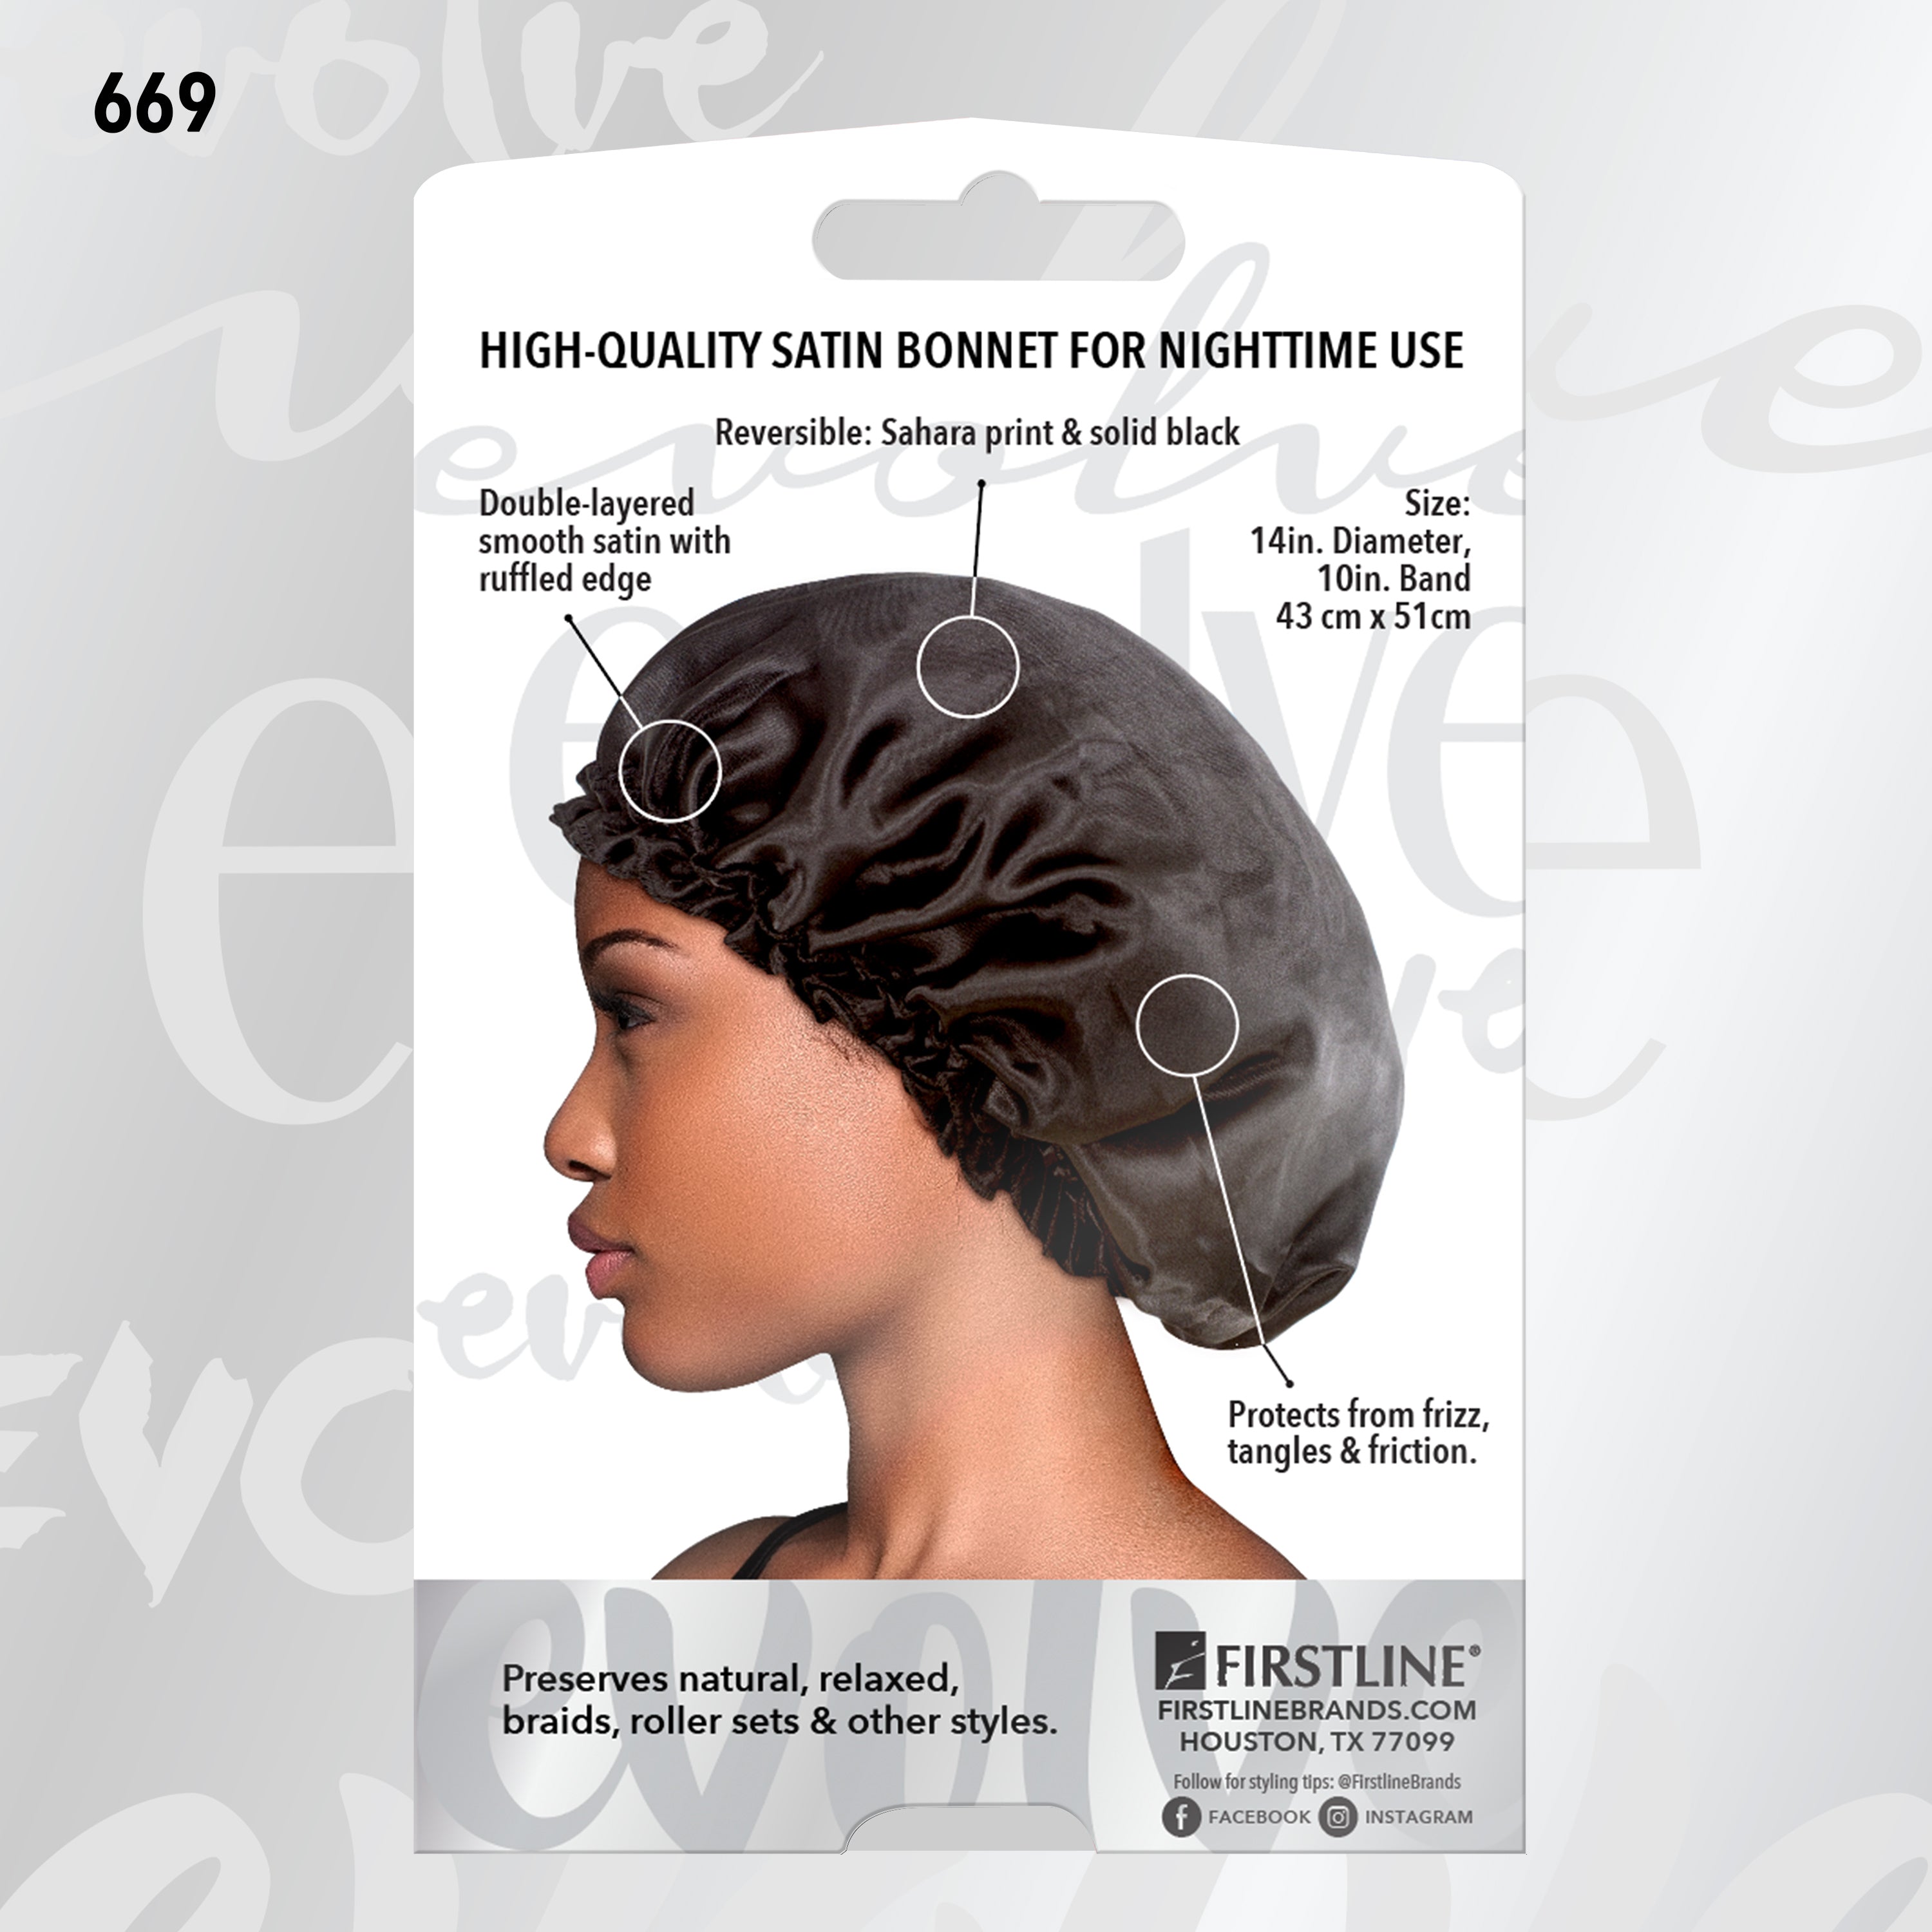 Evolve® Satin Reversible Bonnets, Sahara 669 – Firstline Brands